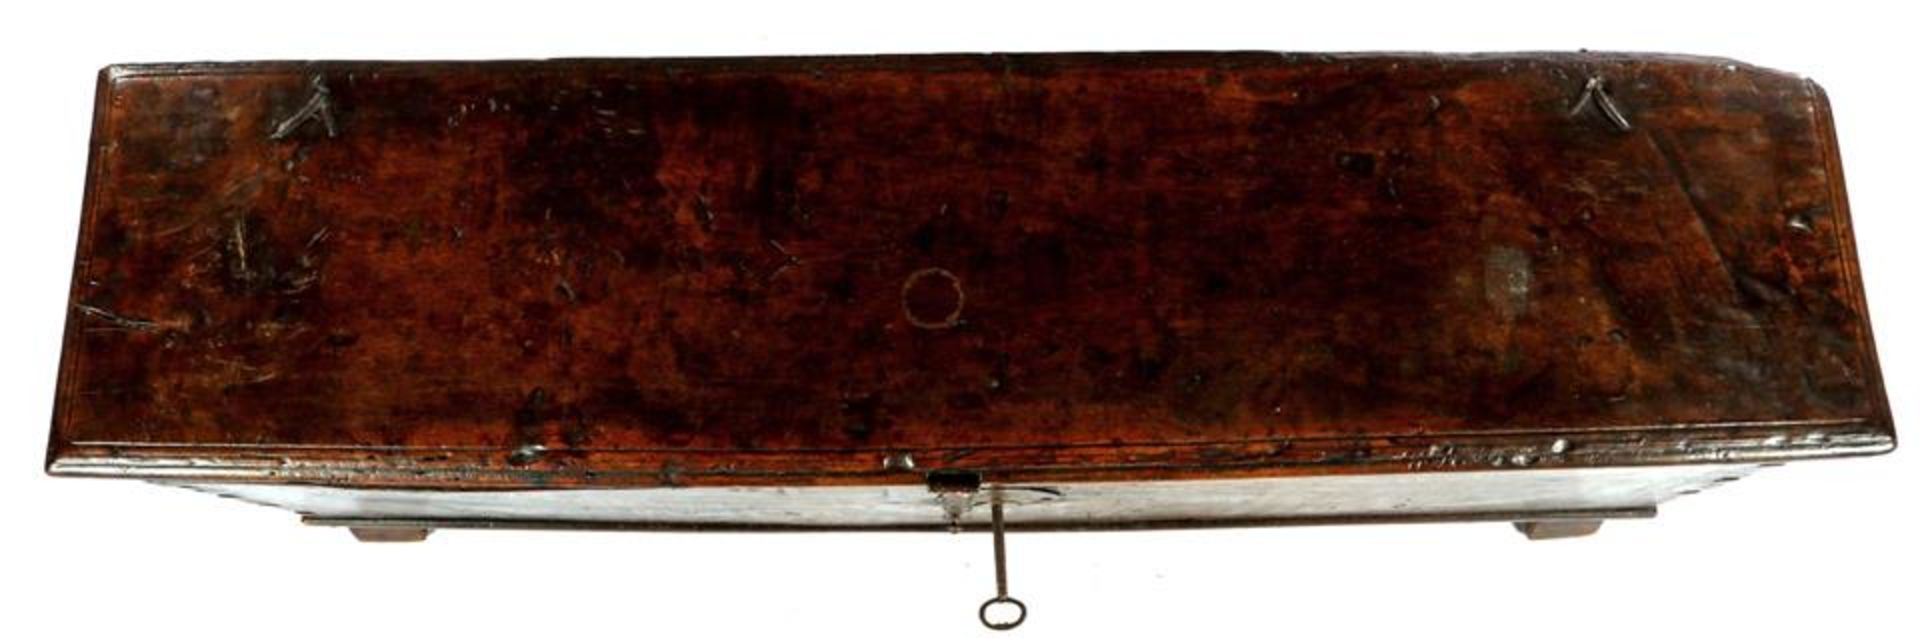 17th century chestnut wooden blanket chest, 50 cm high and top size 172x40.5 cm - Bild 4 aus 4